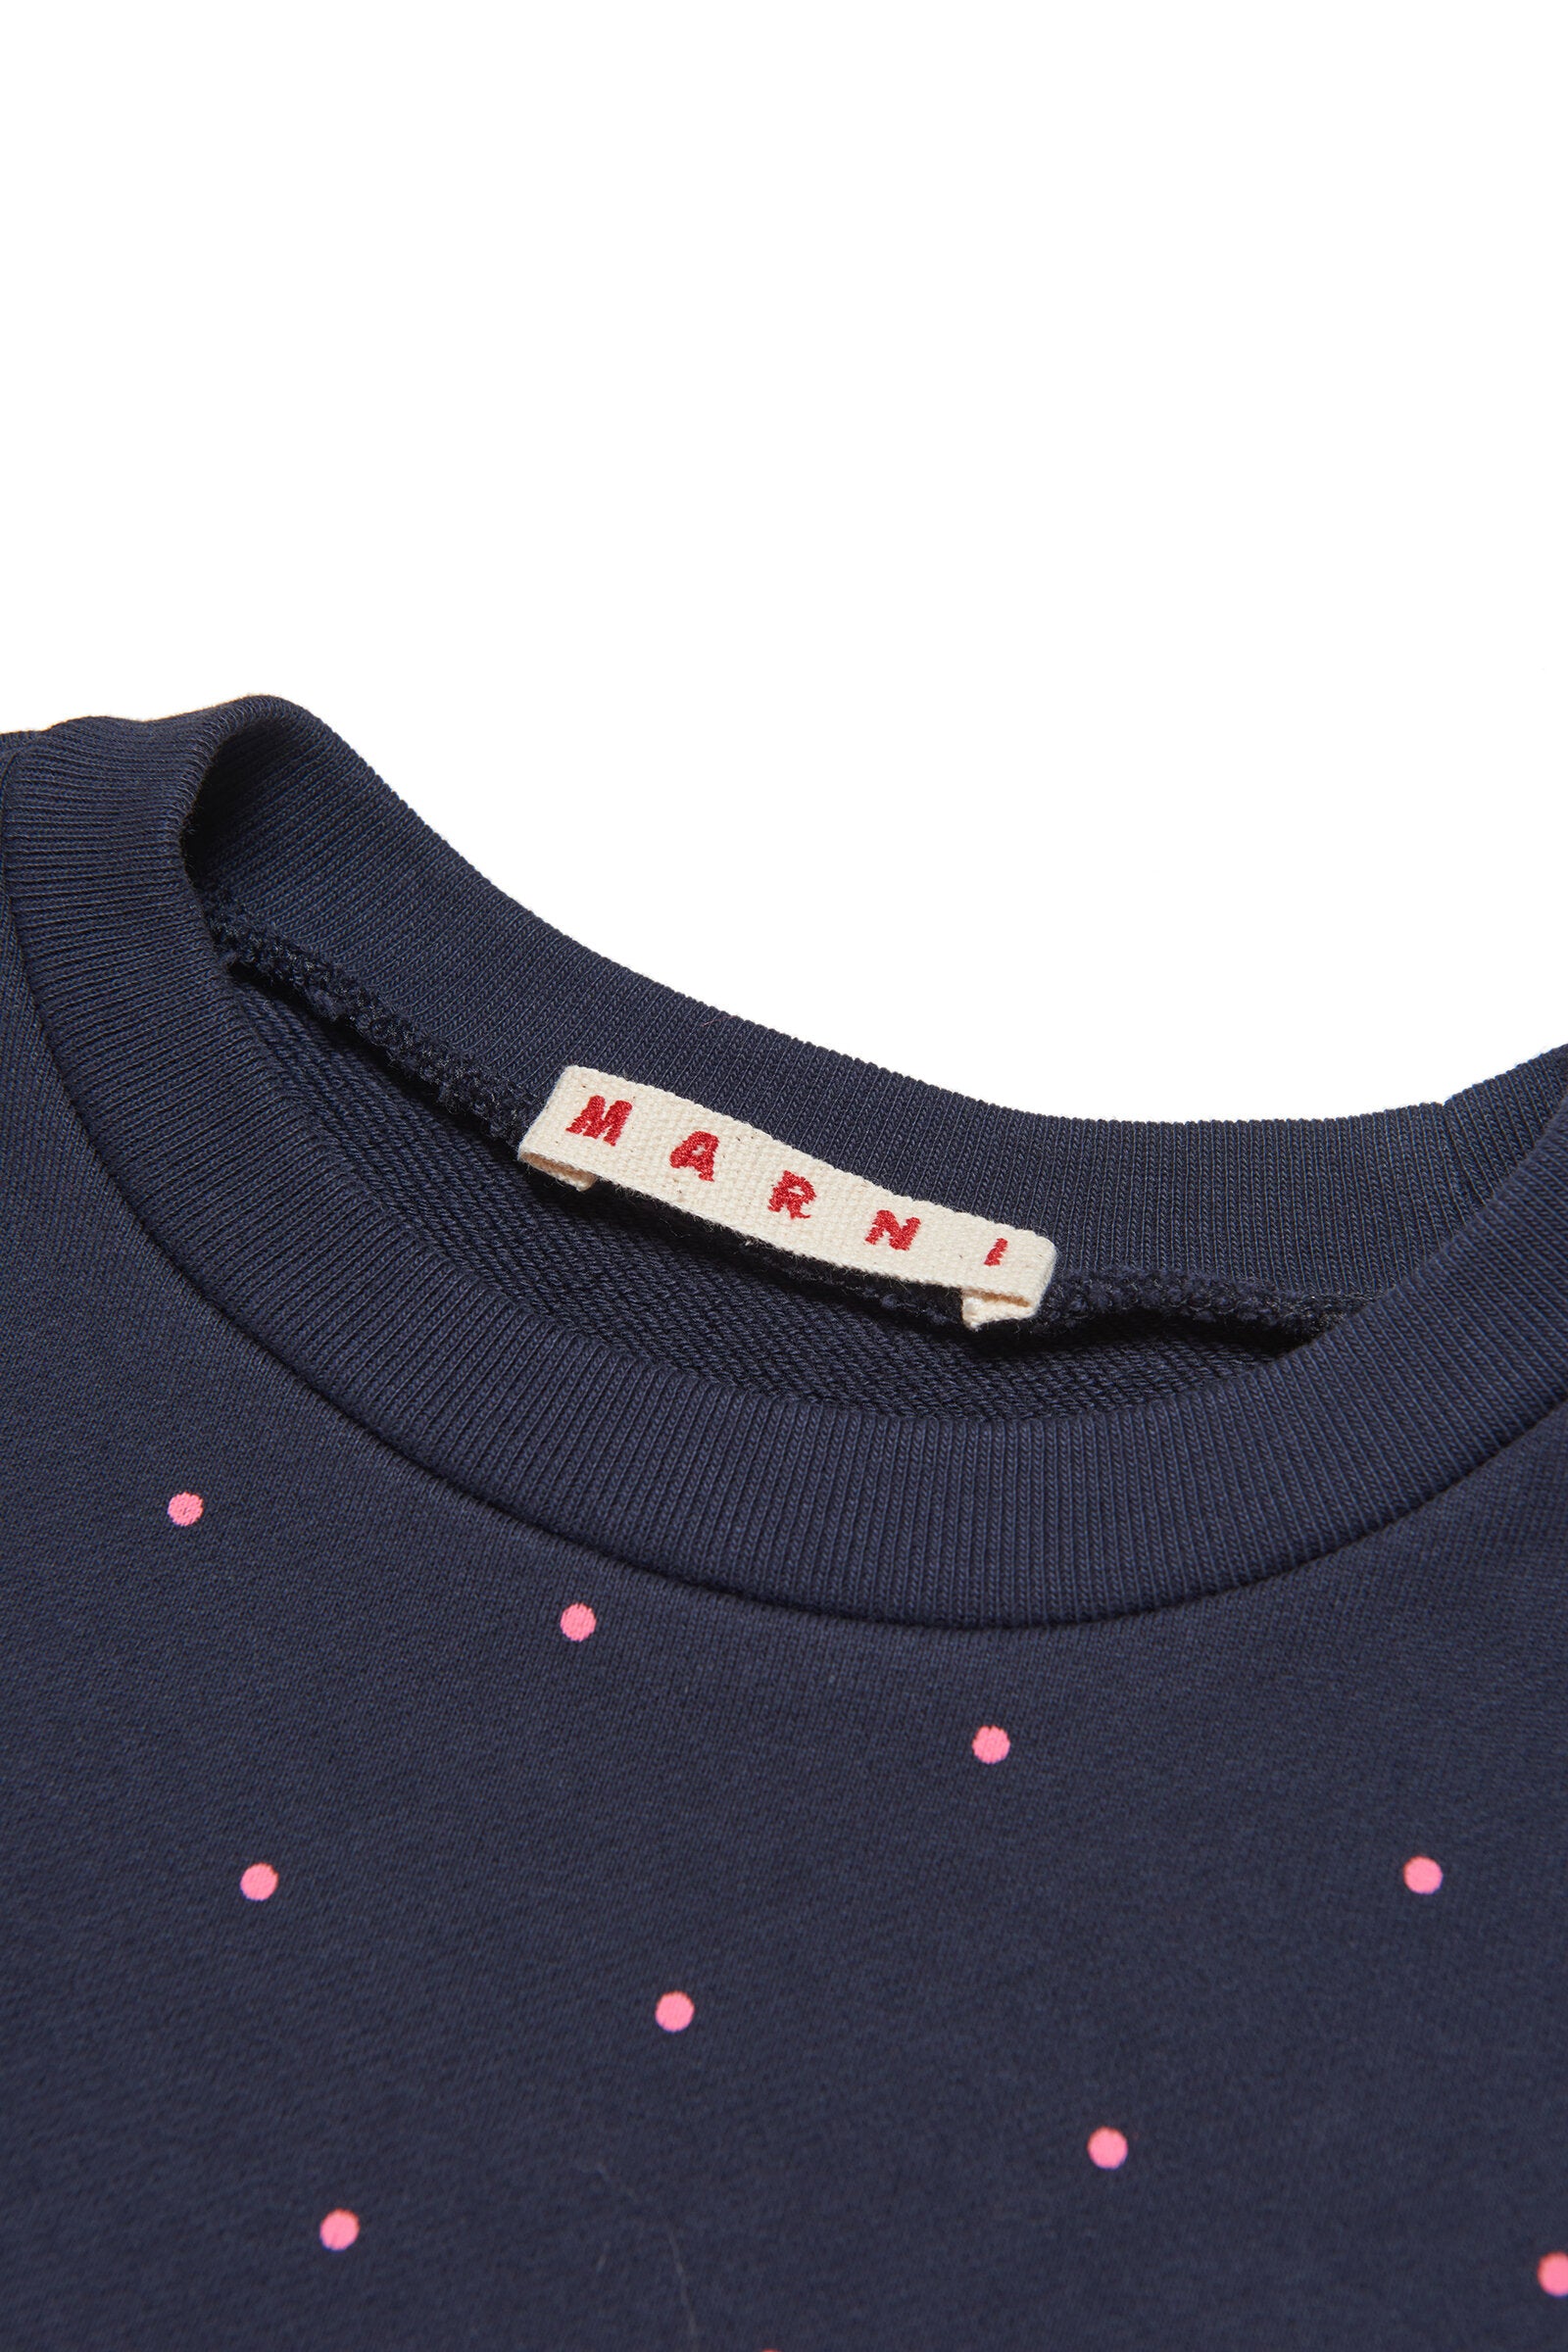 Crew-neck cotton sweatshirt in allover Dots pattern